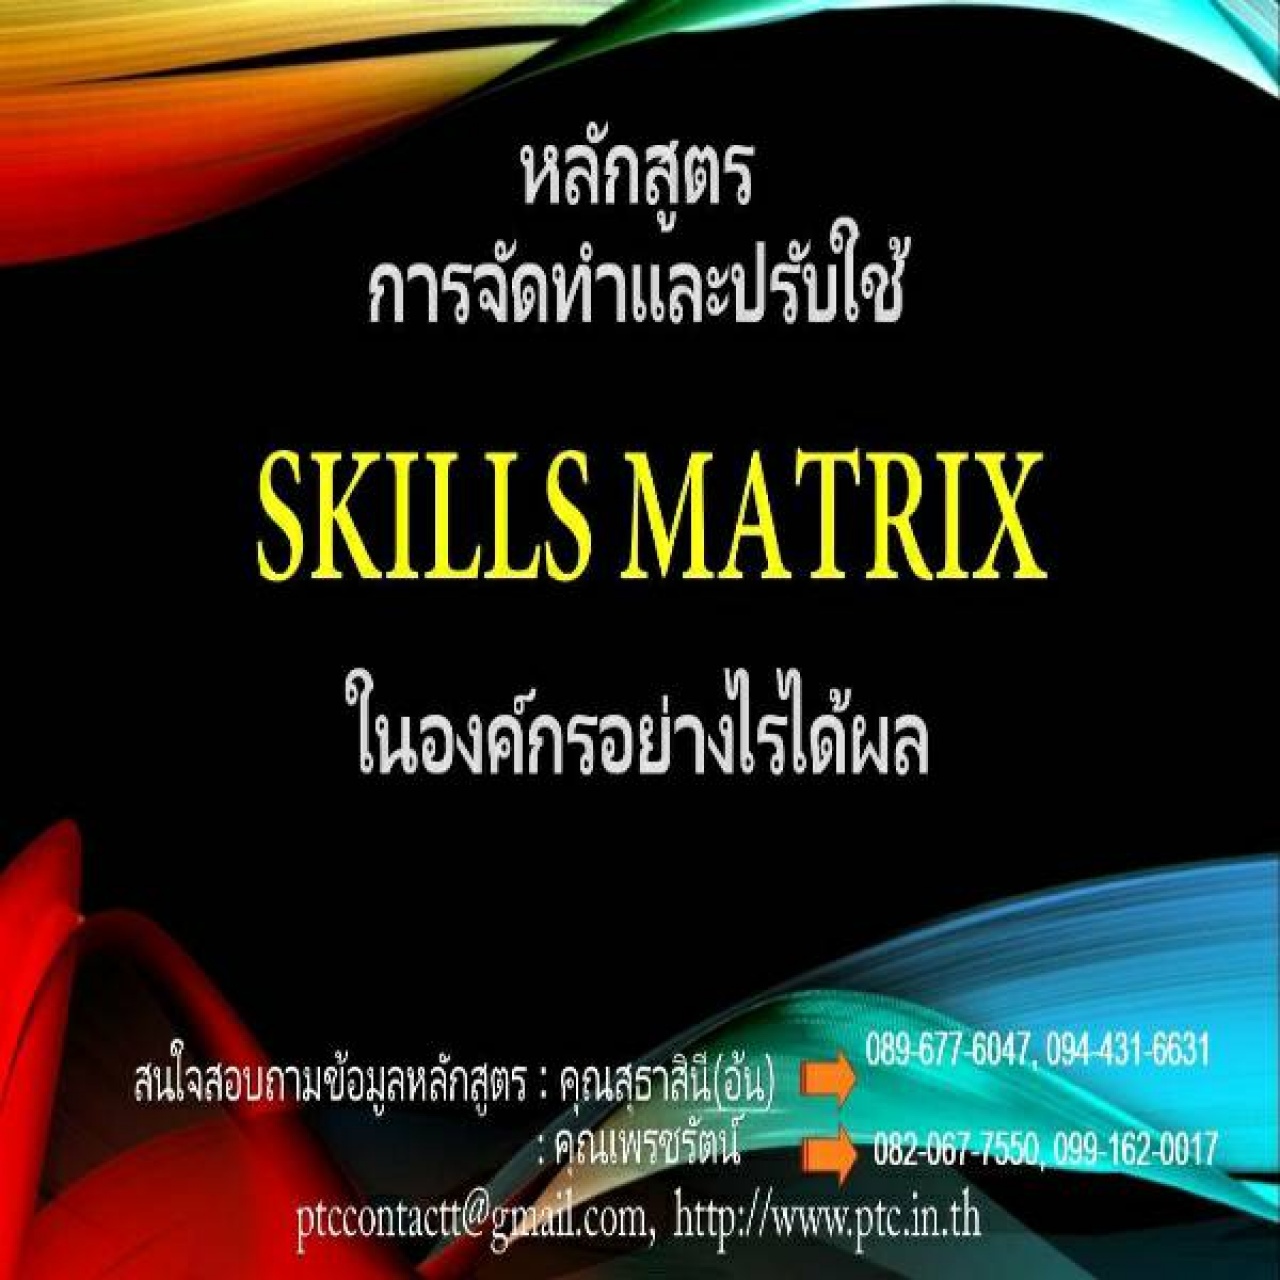 การจัดทำและปรับใช้ Skills Matrix ในองค์กรอย่างได้ผล  (Skill Matrix Setting & Implementation)